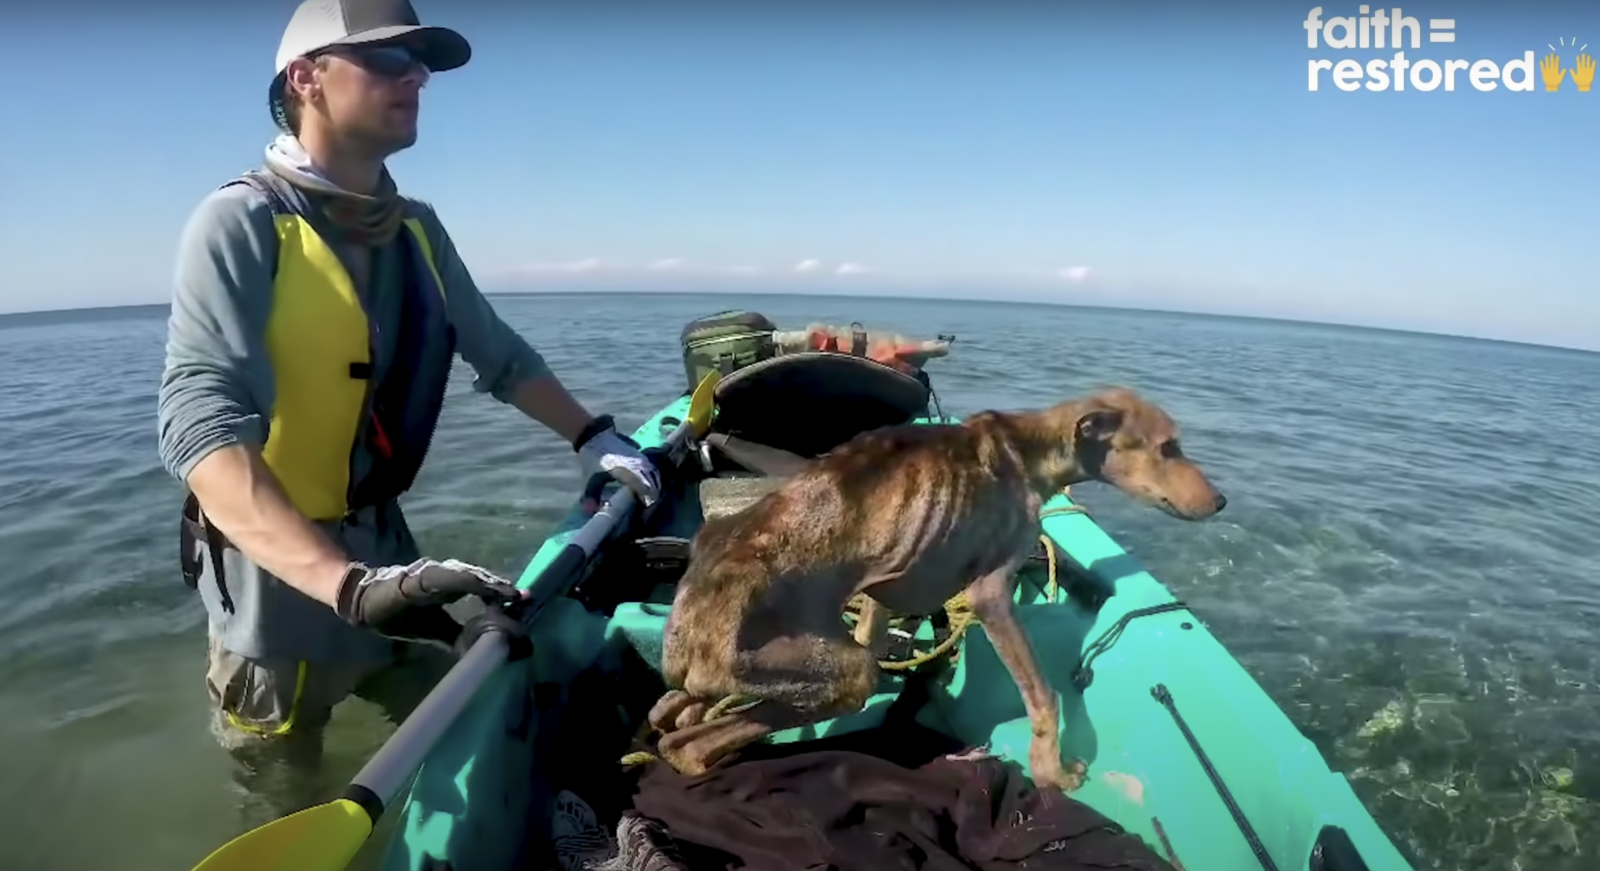 Starving dog on a kayak